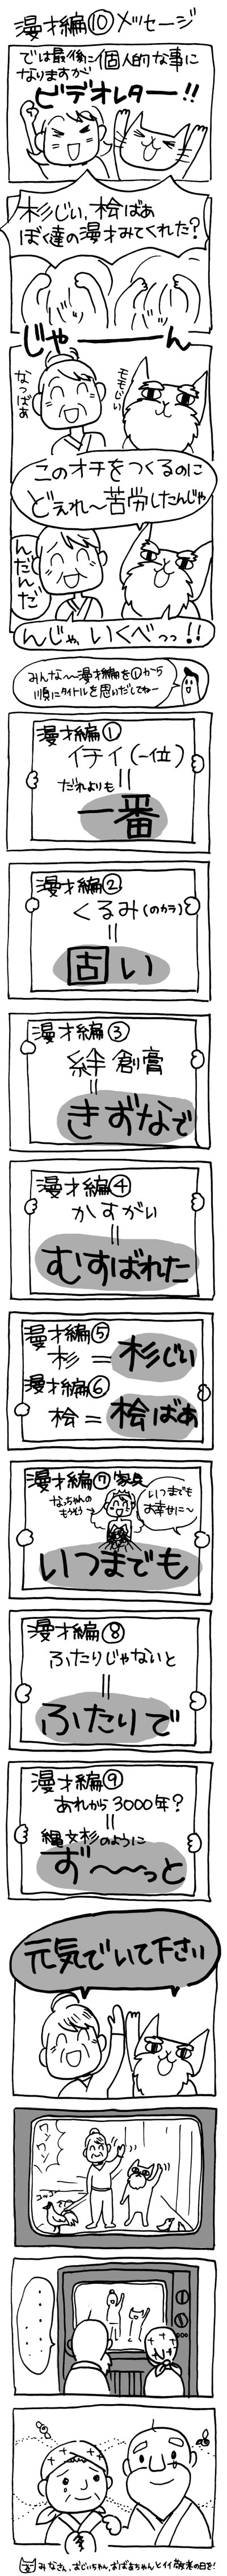 木工漫画　漫才編　⑩　メッセージ　0916